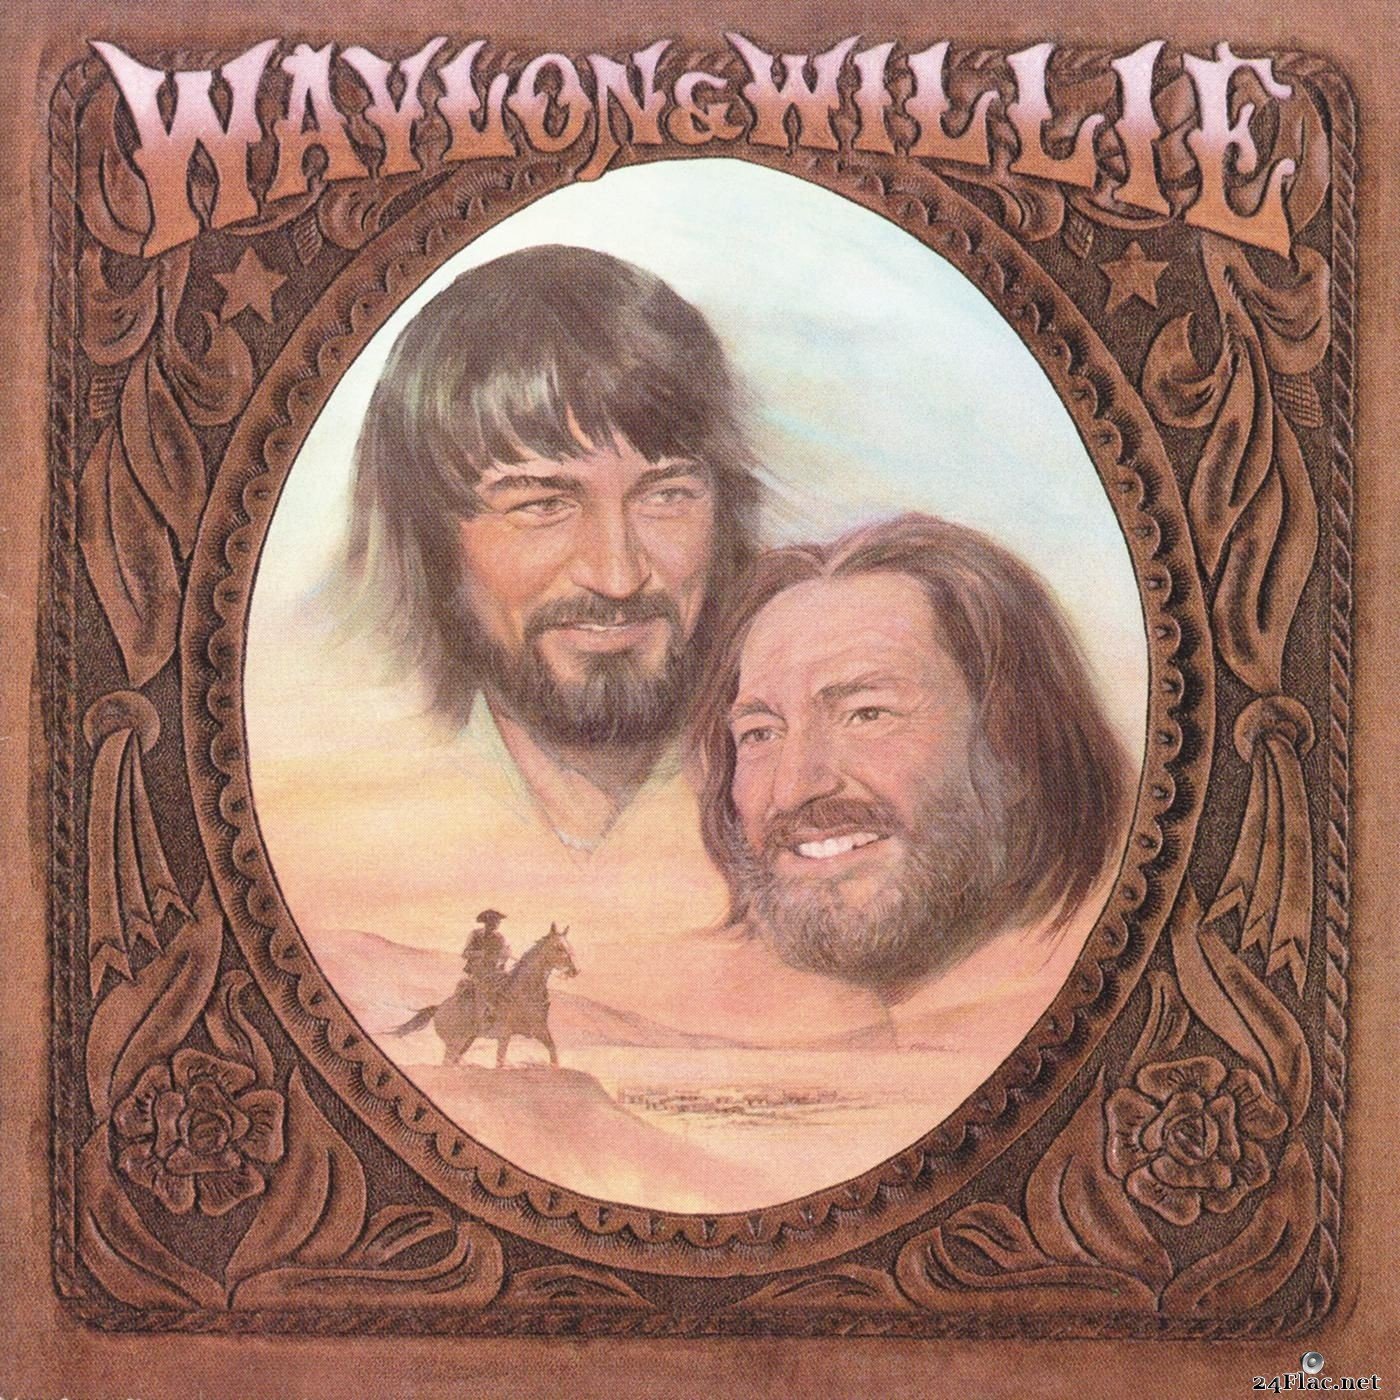 Waylon Jennings & Willie Nelson - Waylon & Willie (2012) Hi-Res